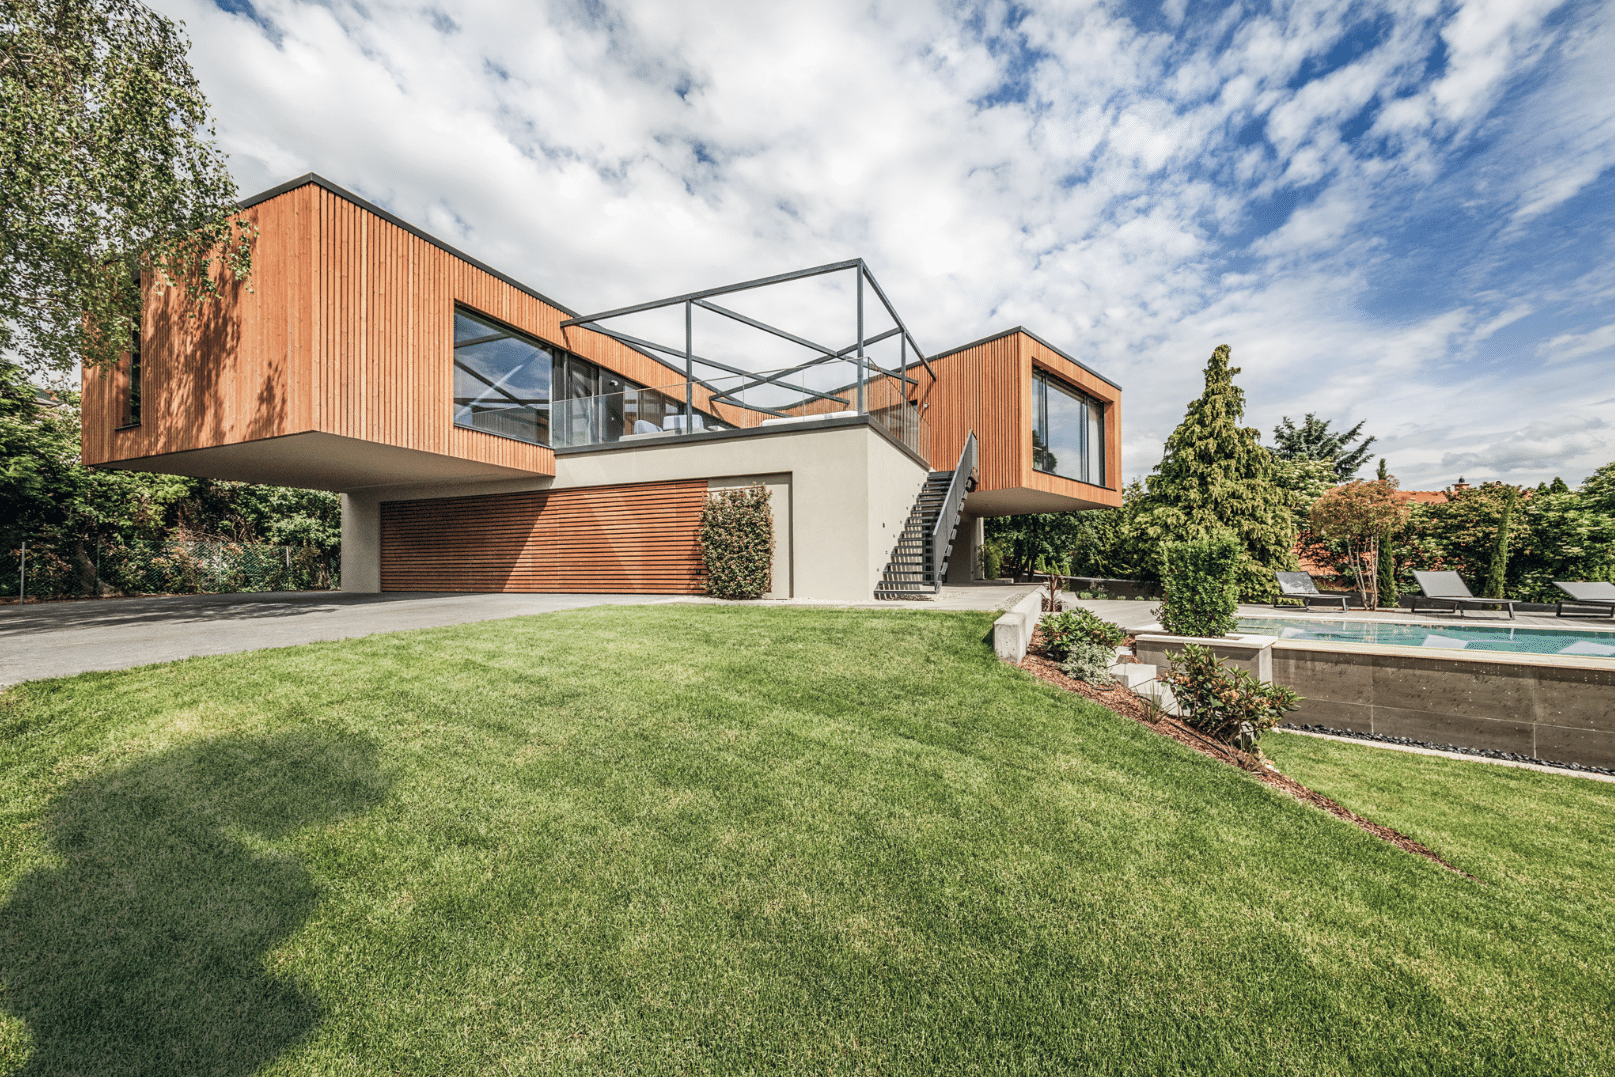 Internorm zeigt ein Architektenhaus mit Holzfassade, Balkon und Treppen zum Garten mit Pool.